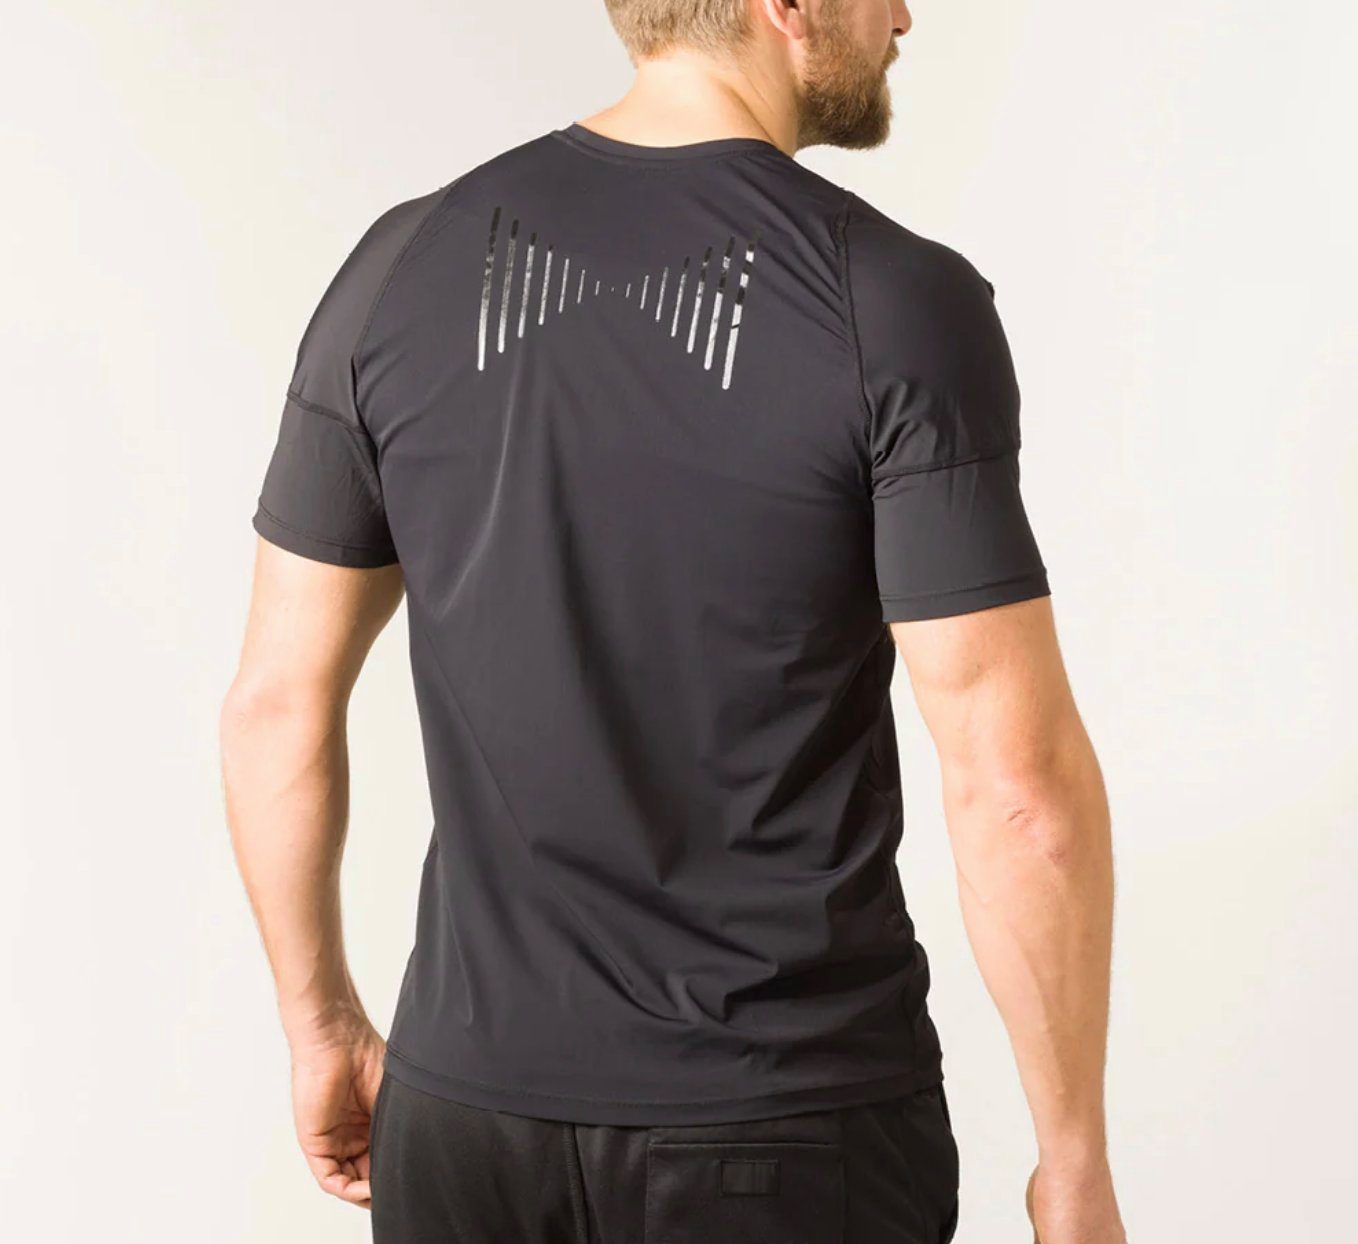 Swedish Posture Trainingsshirt REMINDER POSTURE T-SHIRT MAN - erinnert Sie an eine aufrechte Haltung unifarben, ealstischer Einsatz zur Haltungskorrektur, funktioniert ohne Kompression schwarz